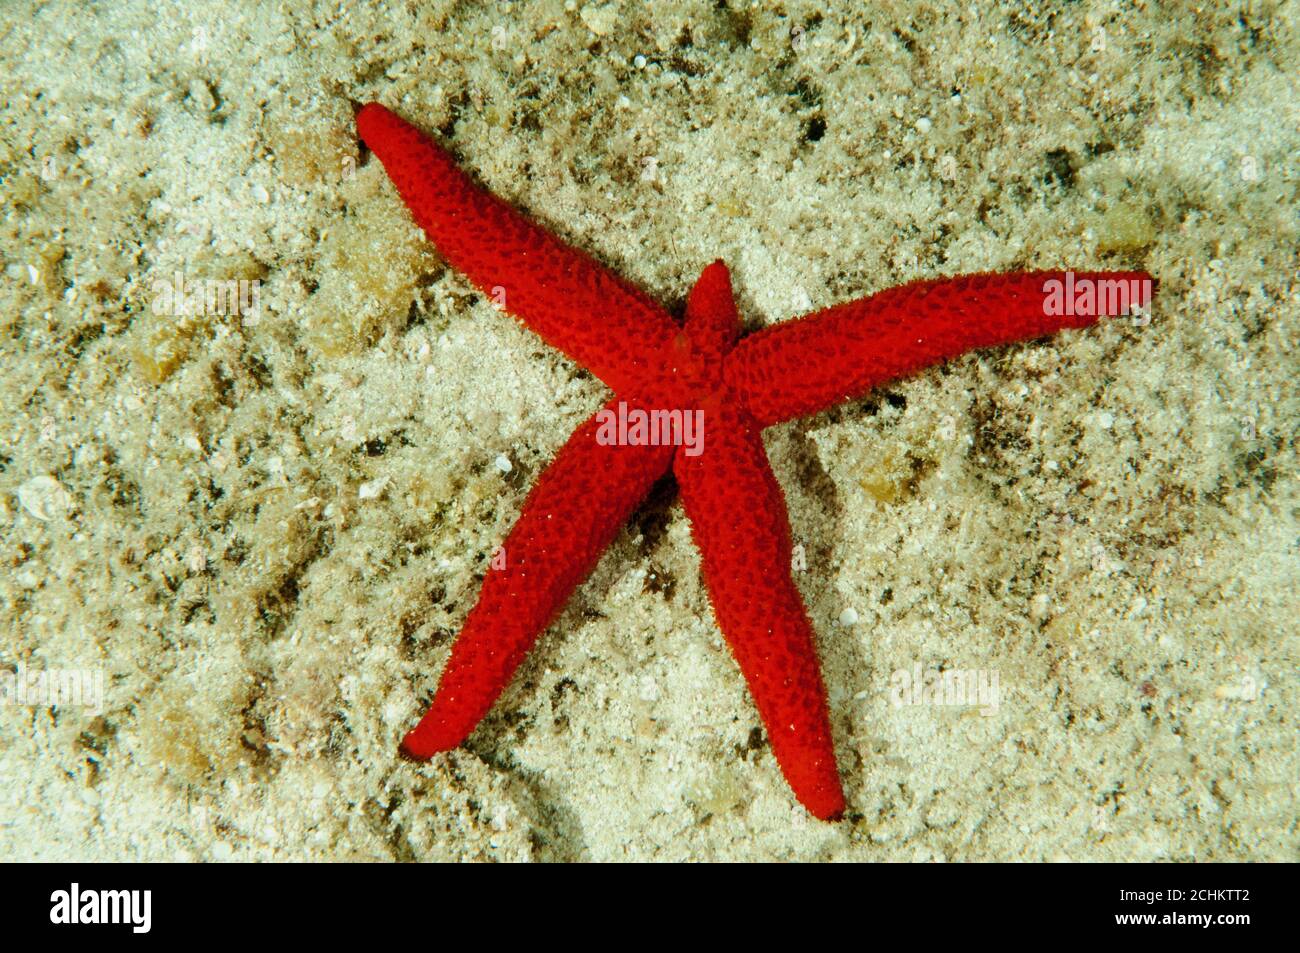 Mediterranean red startfish, Echinaster sepositus, regenerating missing arm, Kas Turkey Stock Photo